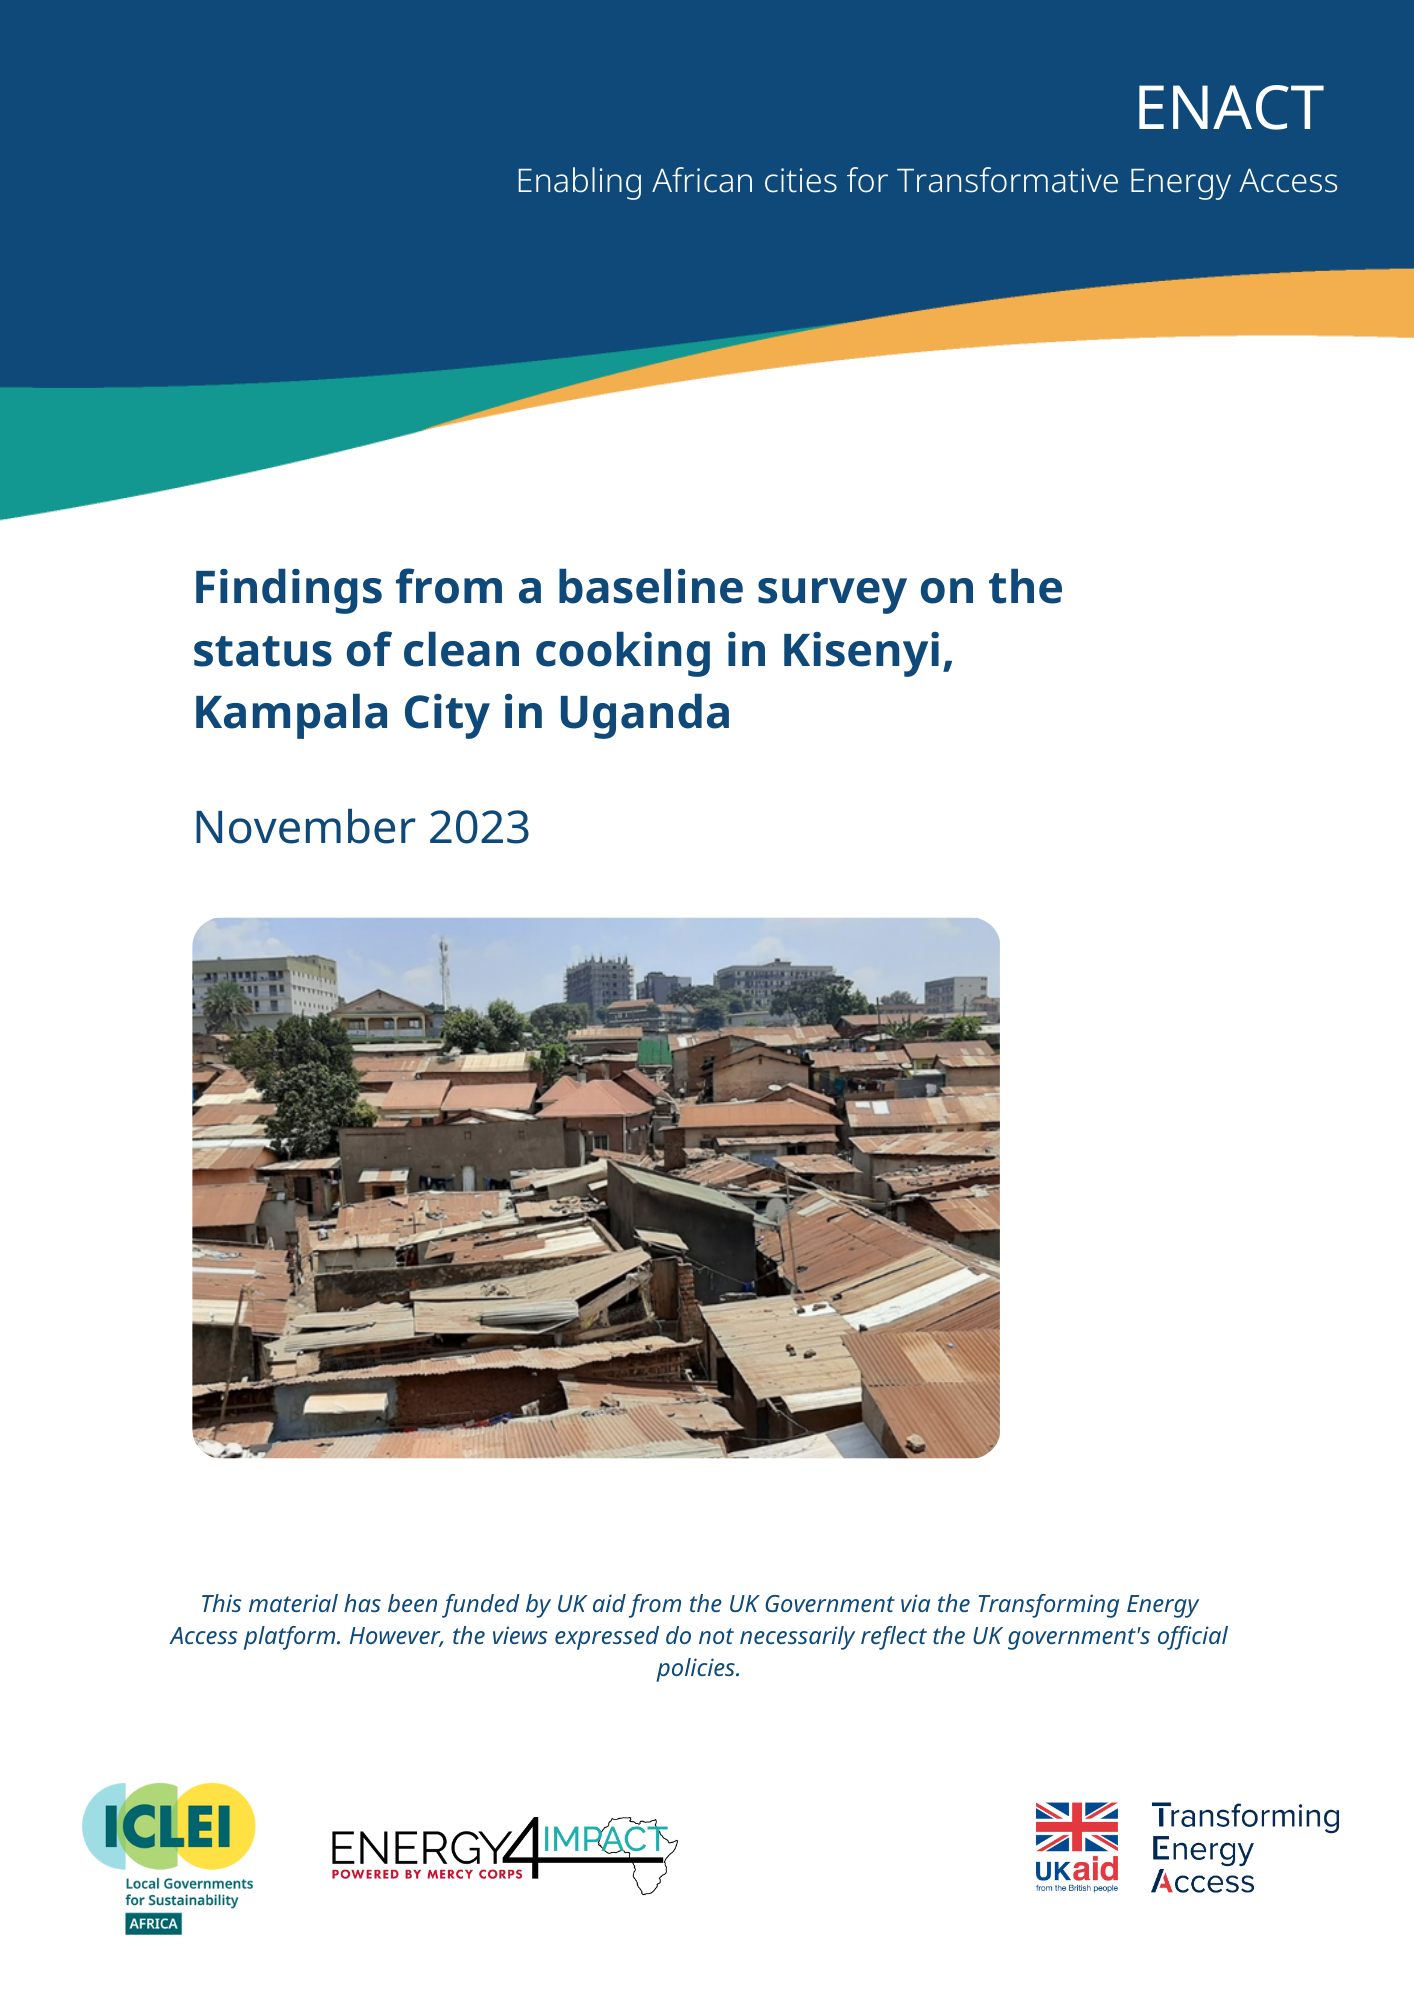 Résultats d'une enquête de référence sur l'état de la cuisine propre à Kisenyi, dans la ville de Kampala en Ouganda